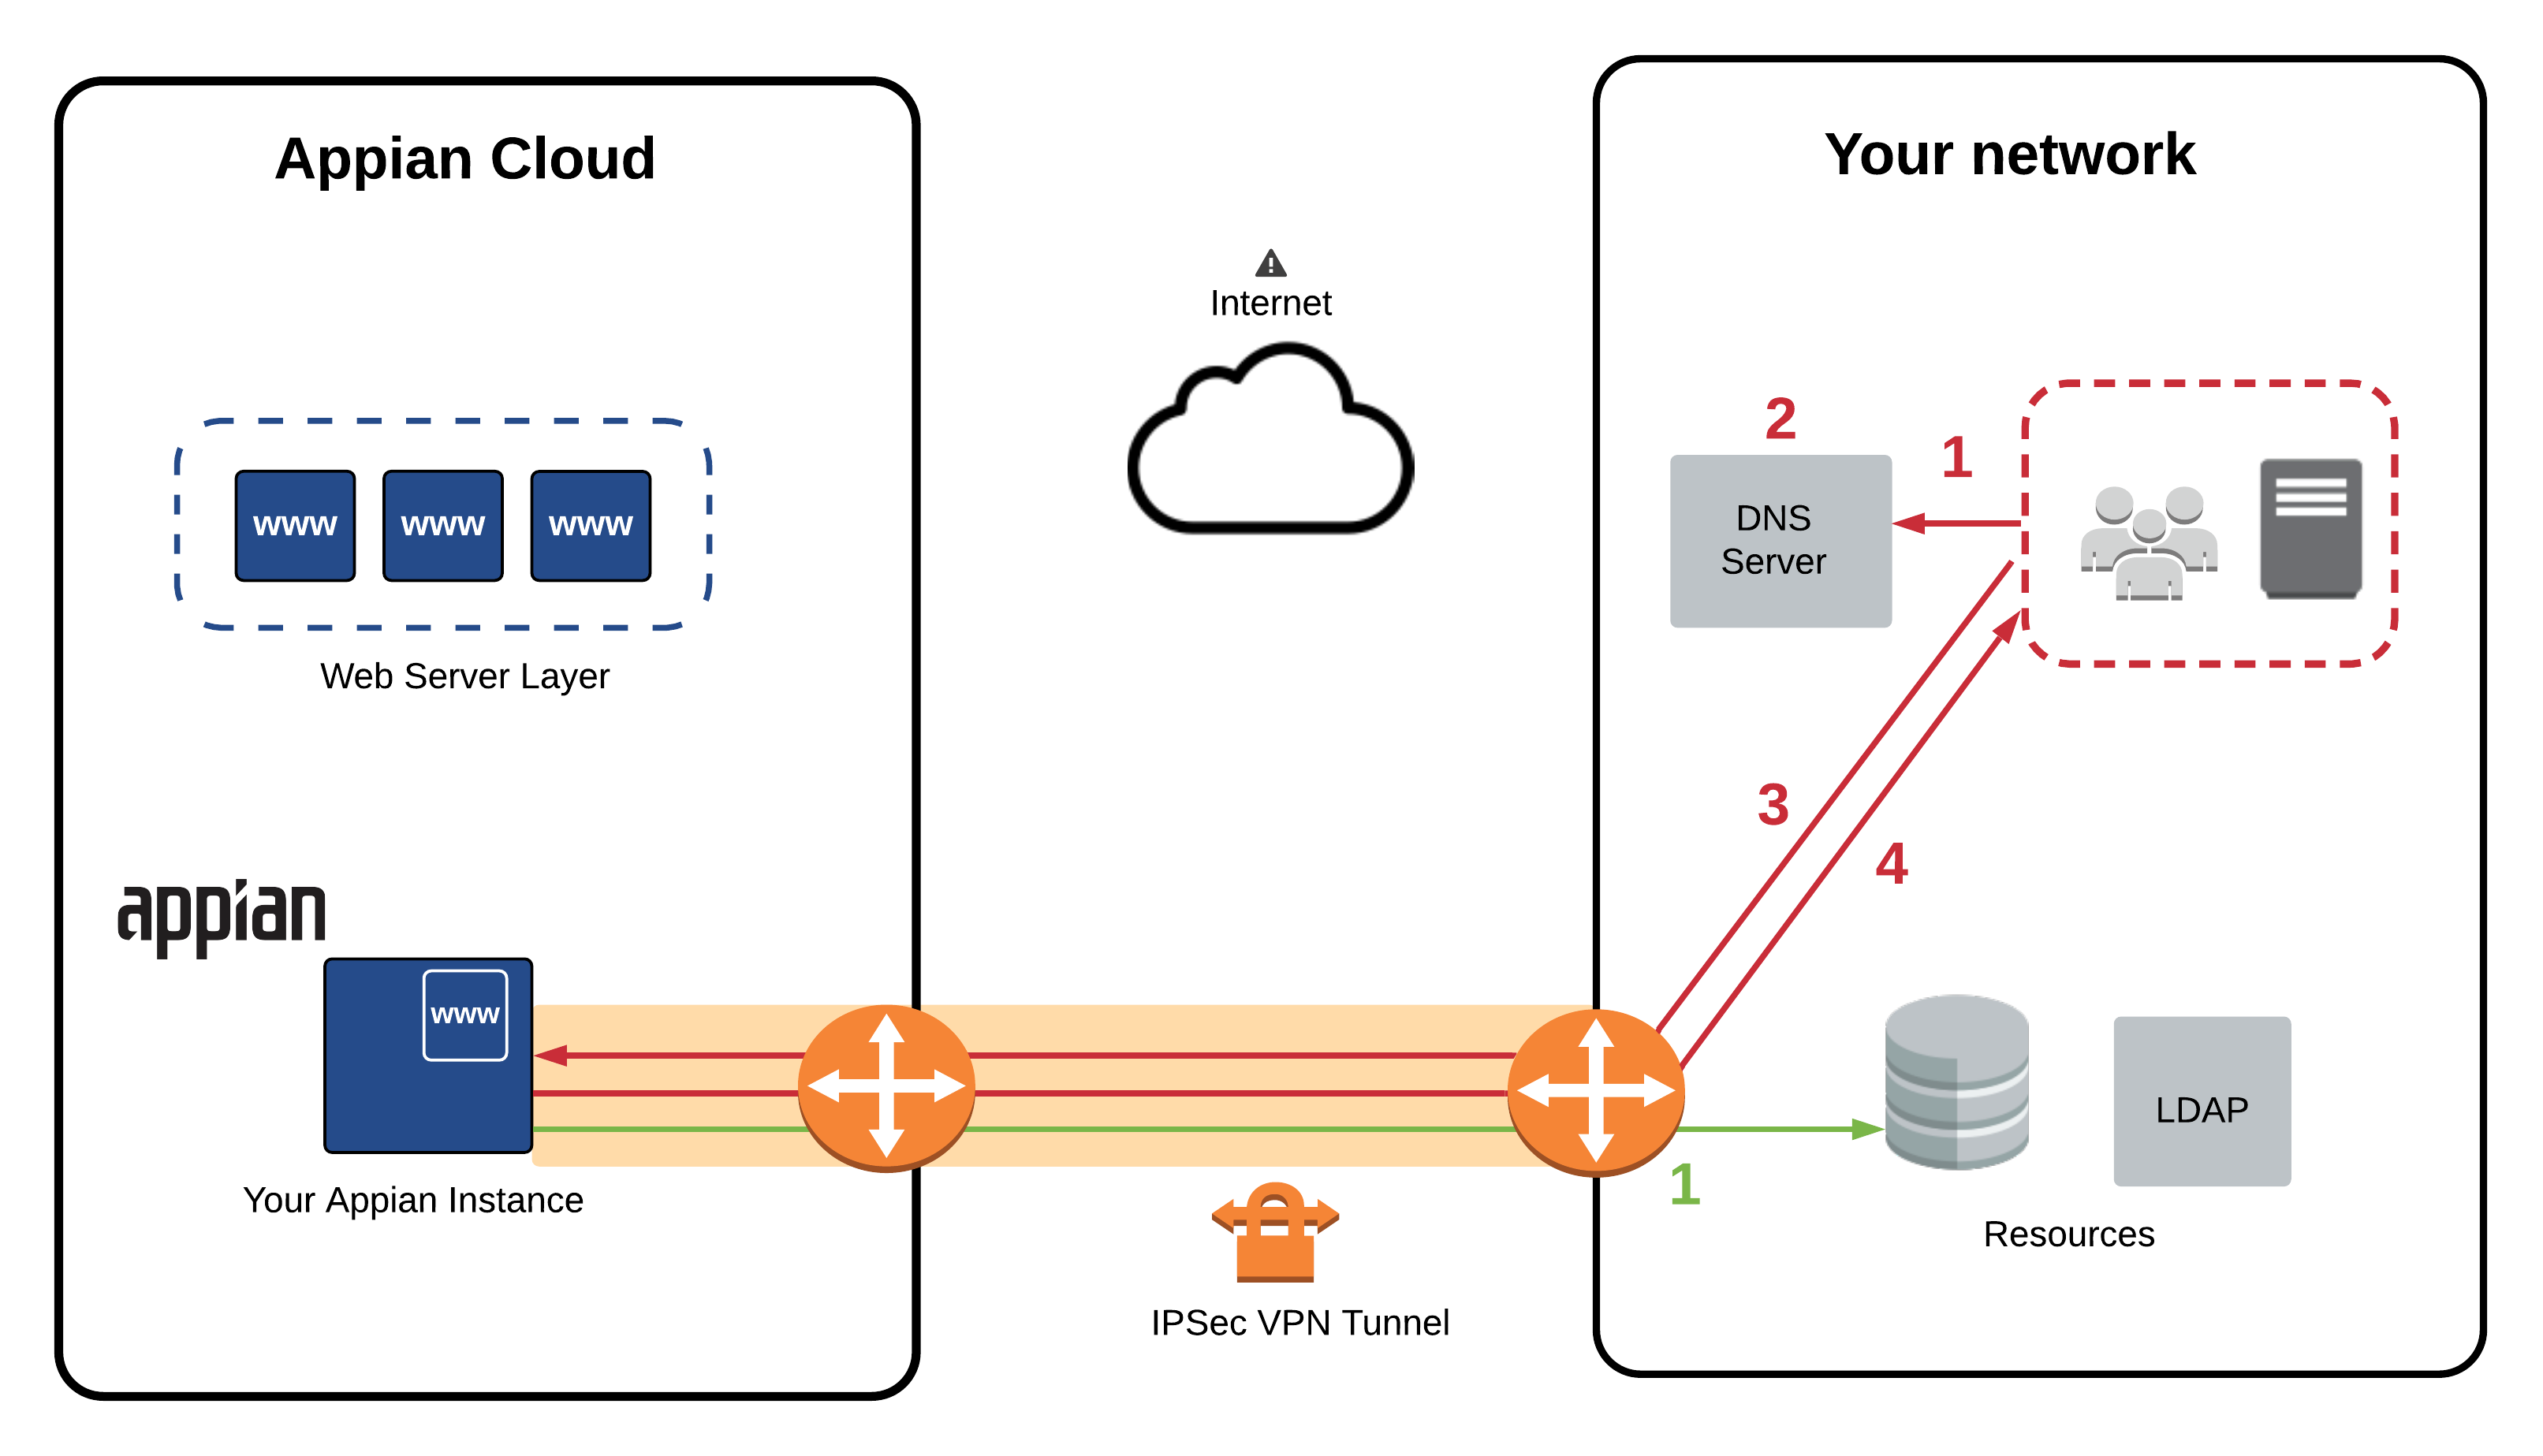 Inbound HTTPS Access over VPN